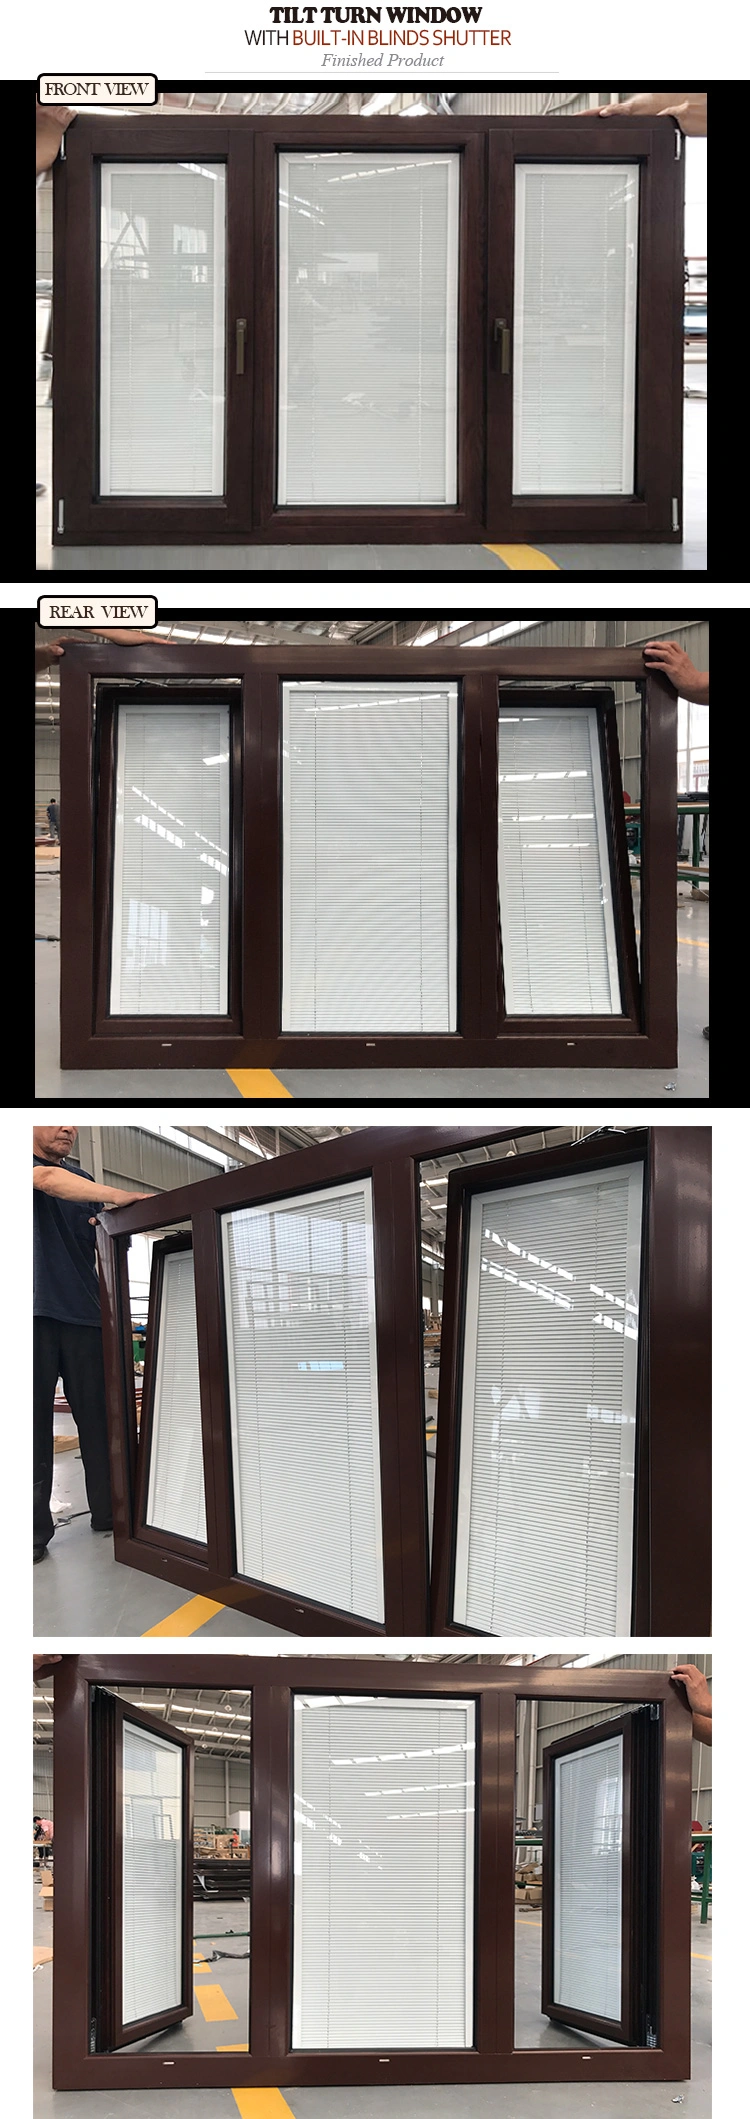 Solid Oak Wood Window with Built in Shutter